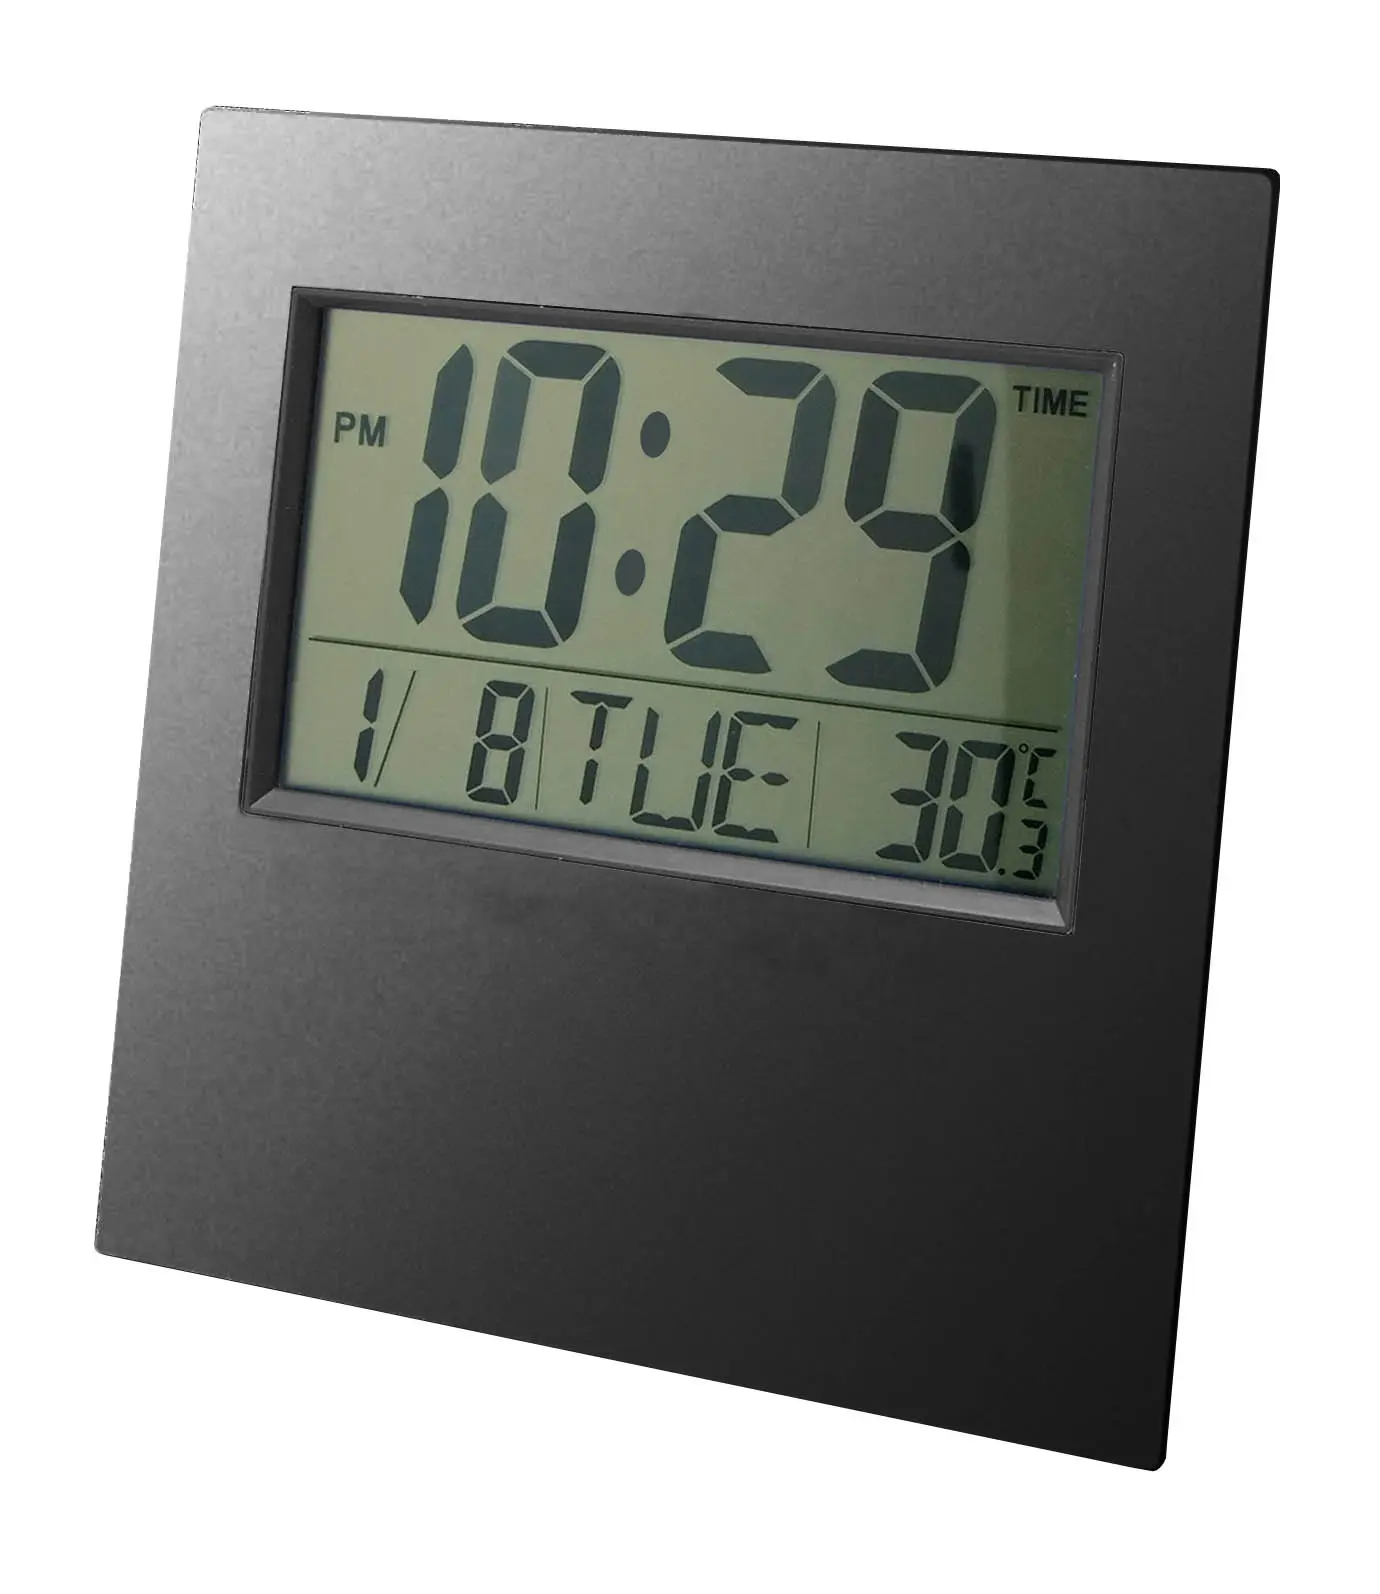 Relógio de parede tela lcd grande, barato, parede, mesa, relógio digital, calendário, presente, display lcd, calendário com data/mês/semana/despertador